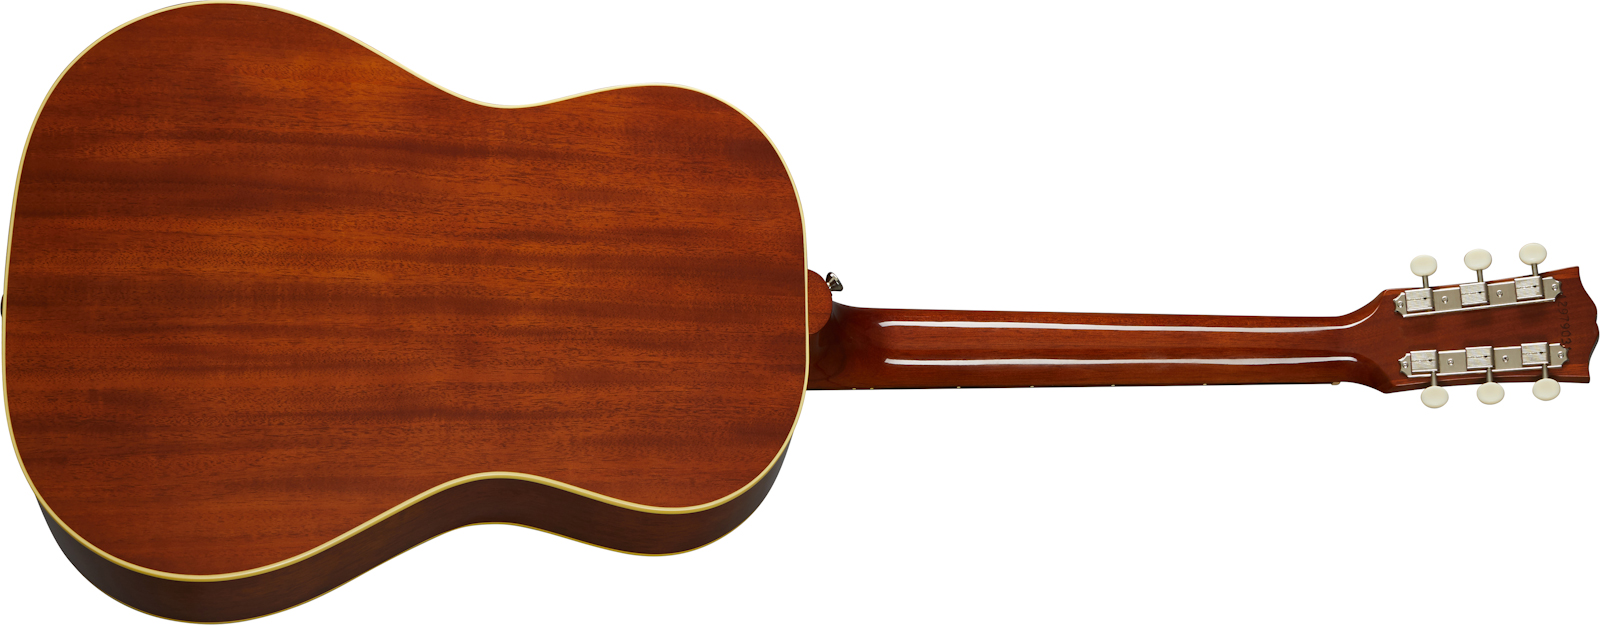 Gibson 50s Lg-2 2020 Auditorium Epicea Acajou Rw - Antique Natural - Guitarra electro acustica - Variation 1